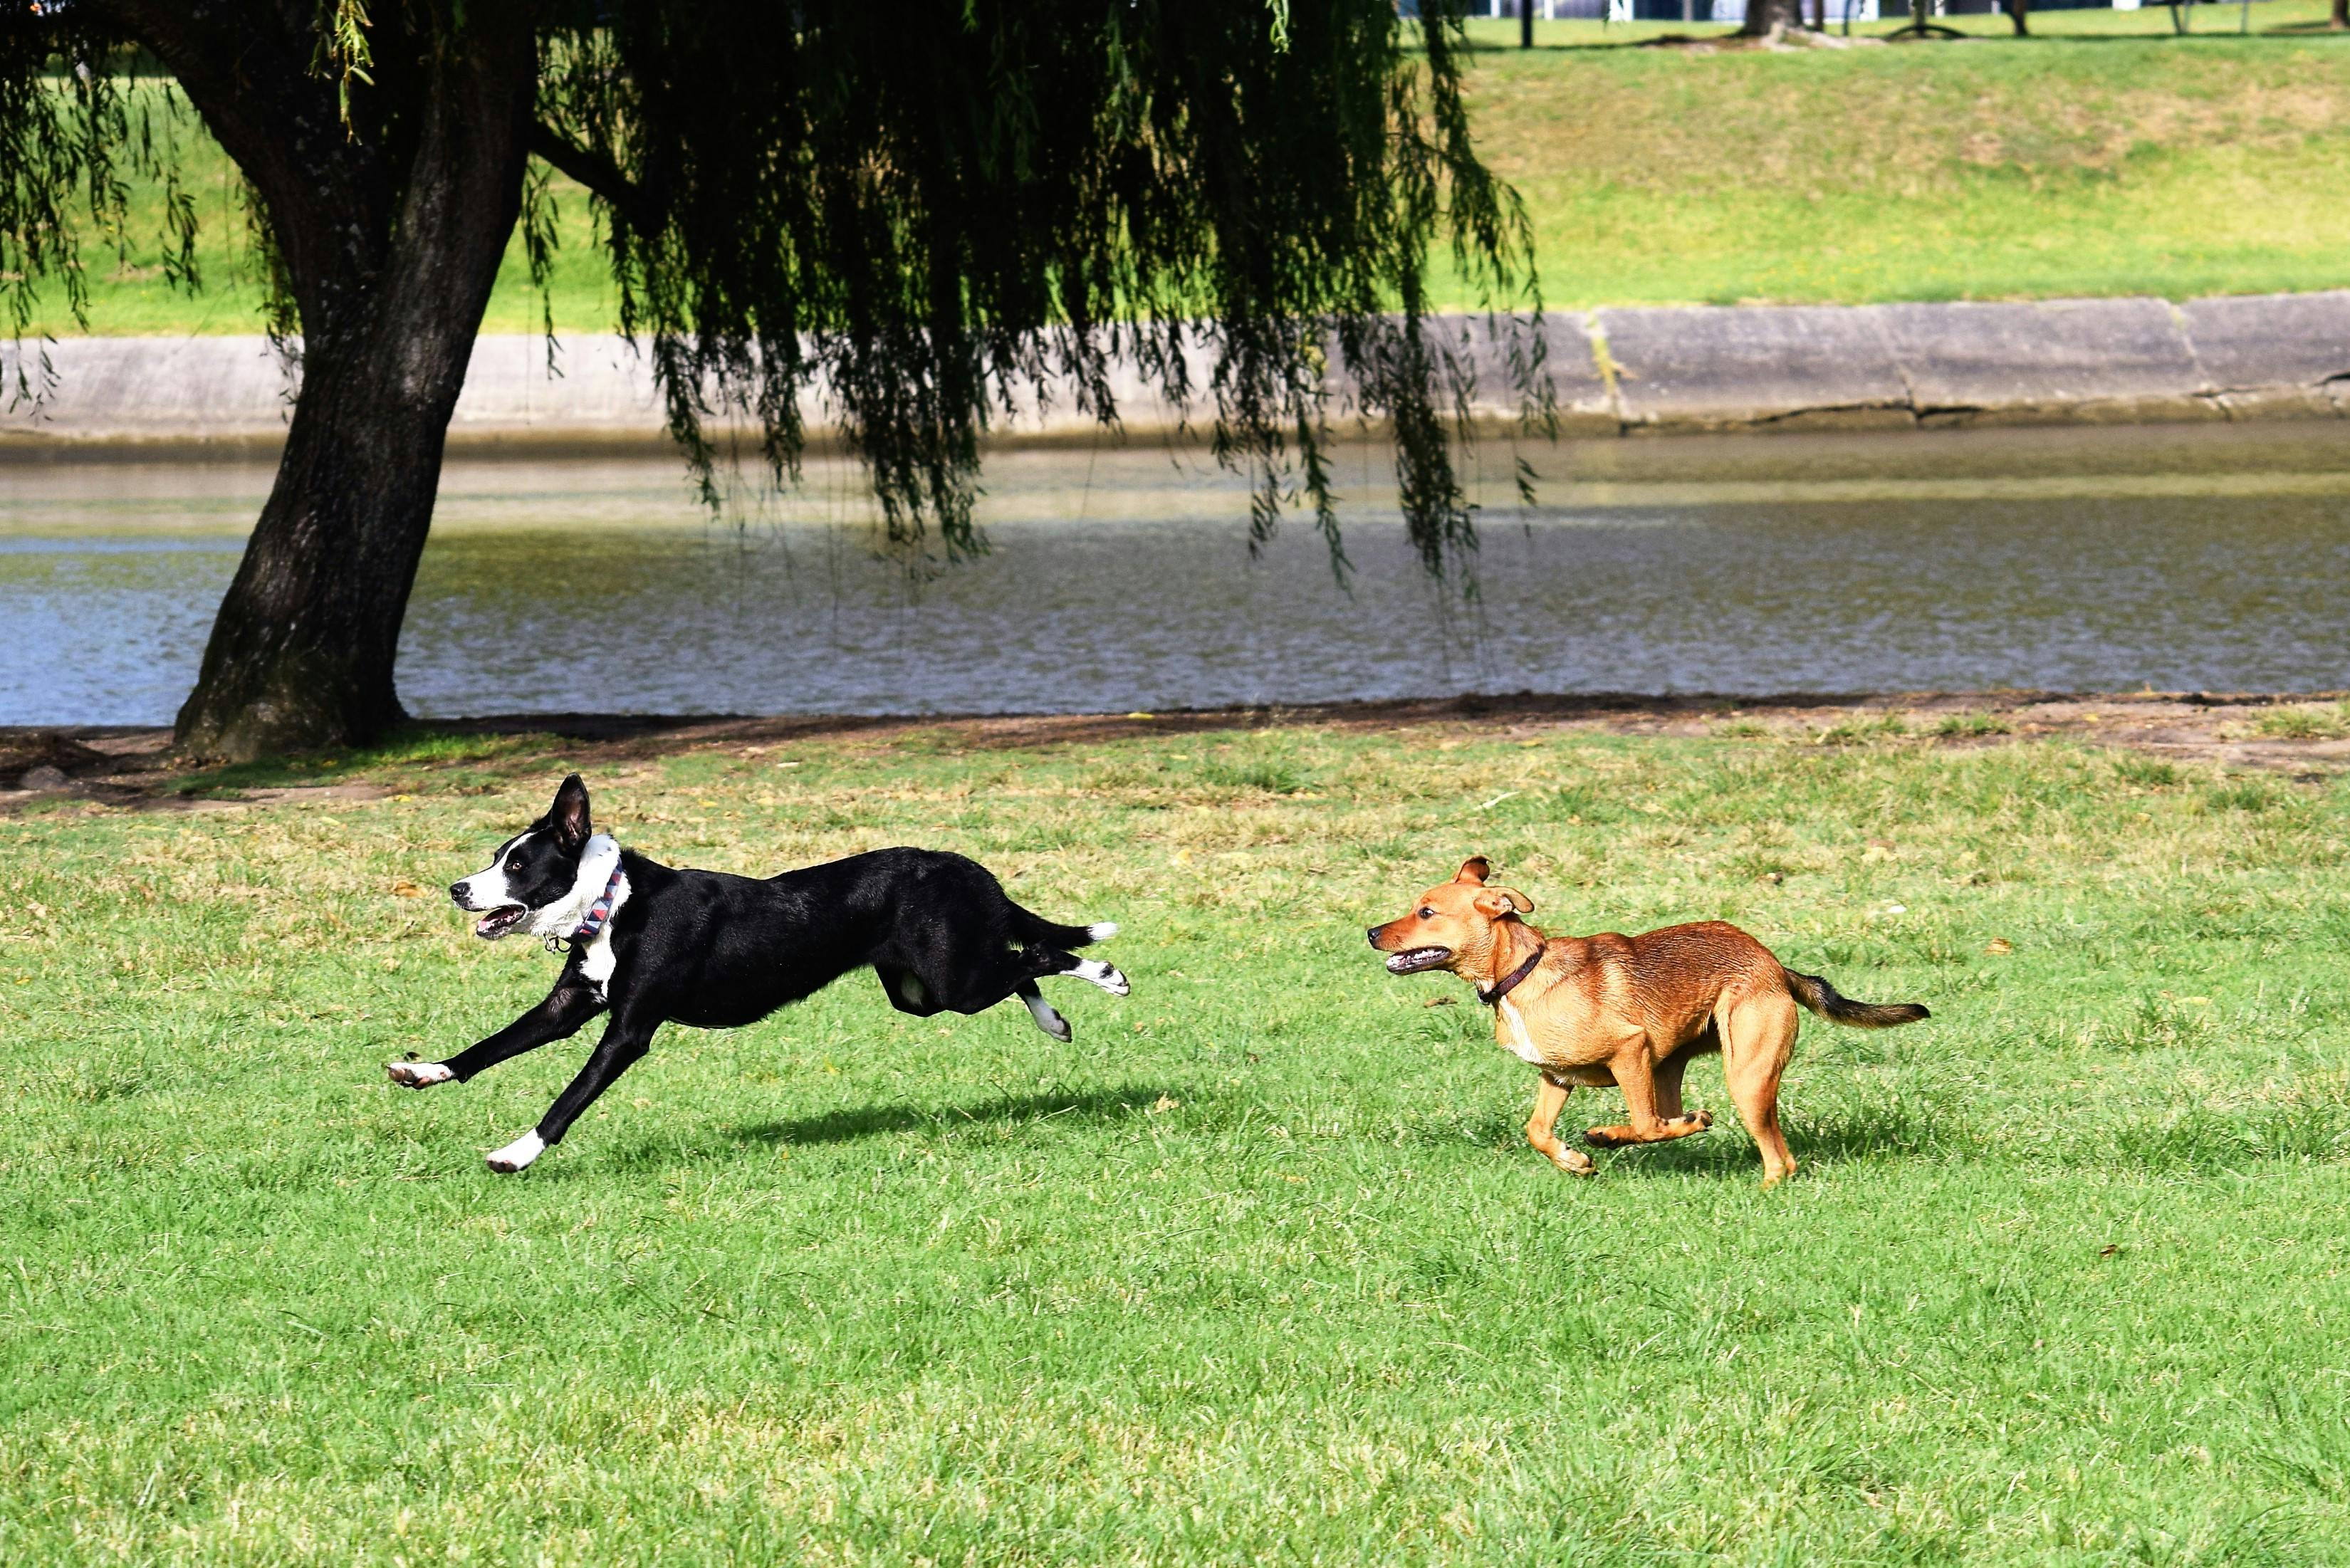 perros pequeños persiguiéndose unos a otros jugando en un césped verde de  verano 8196097 Foto de stock en Vecteezy